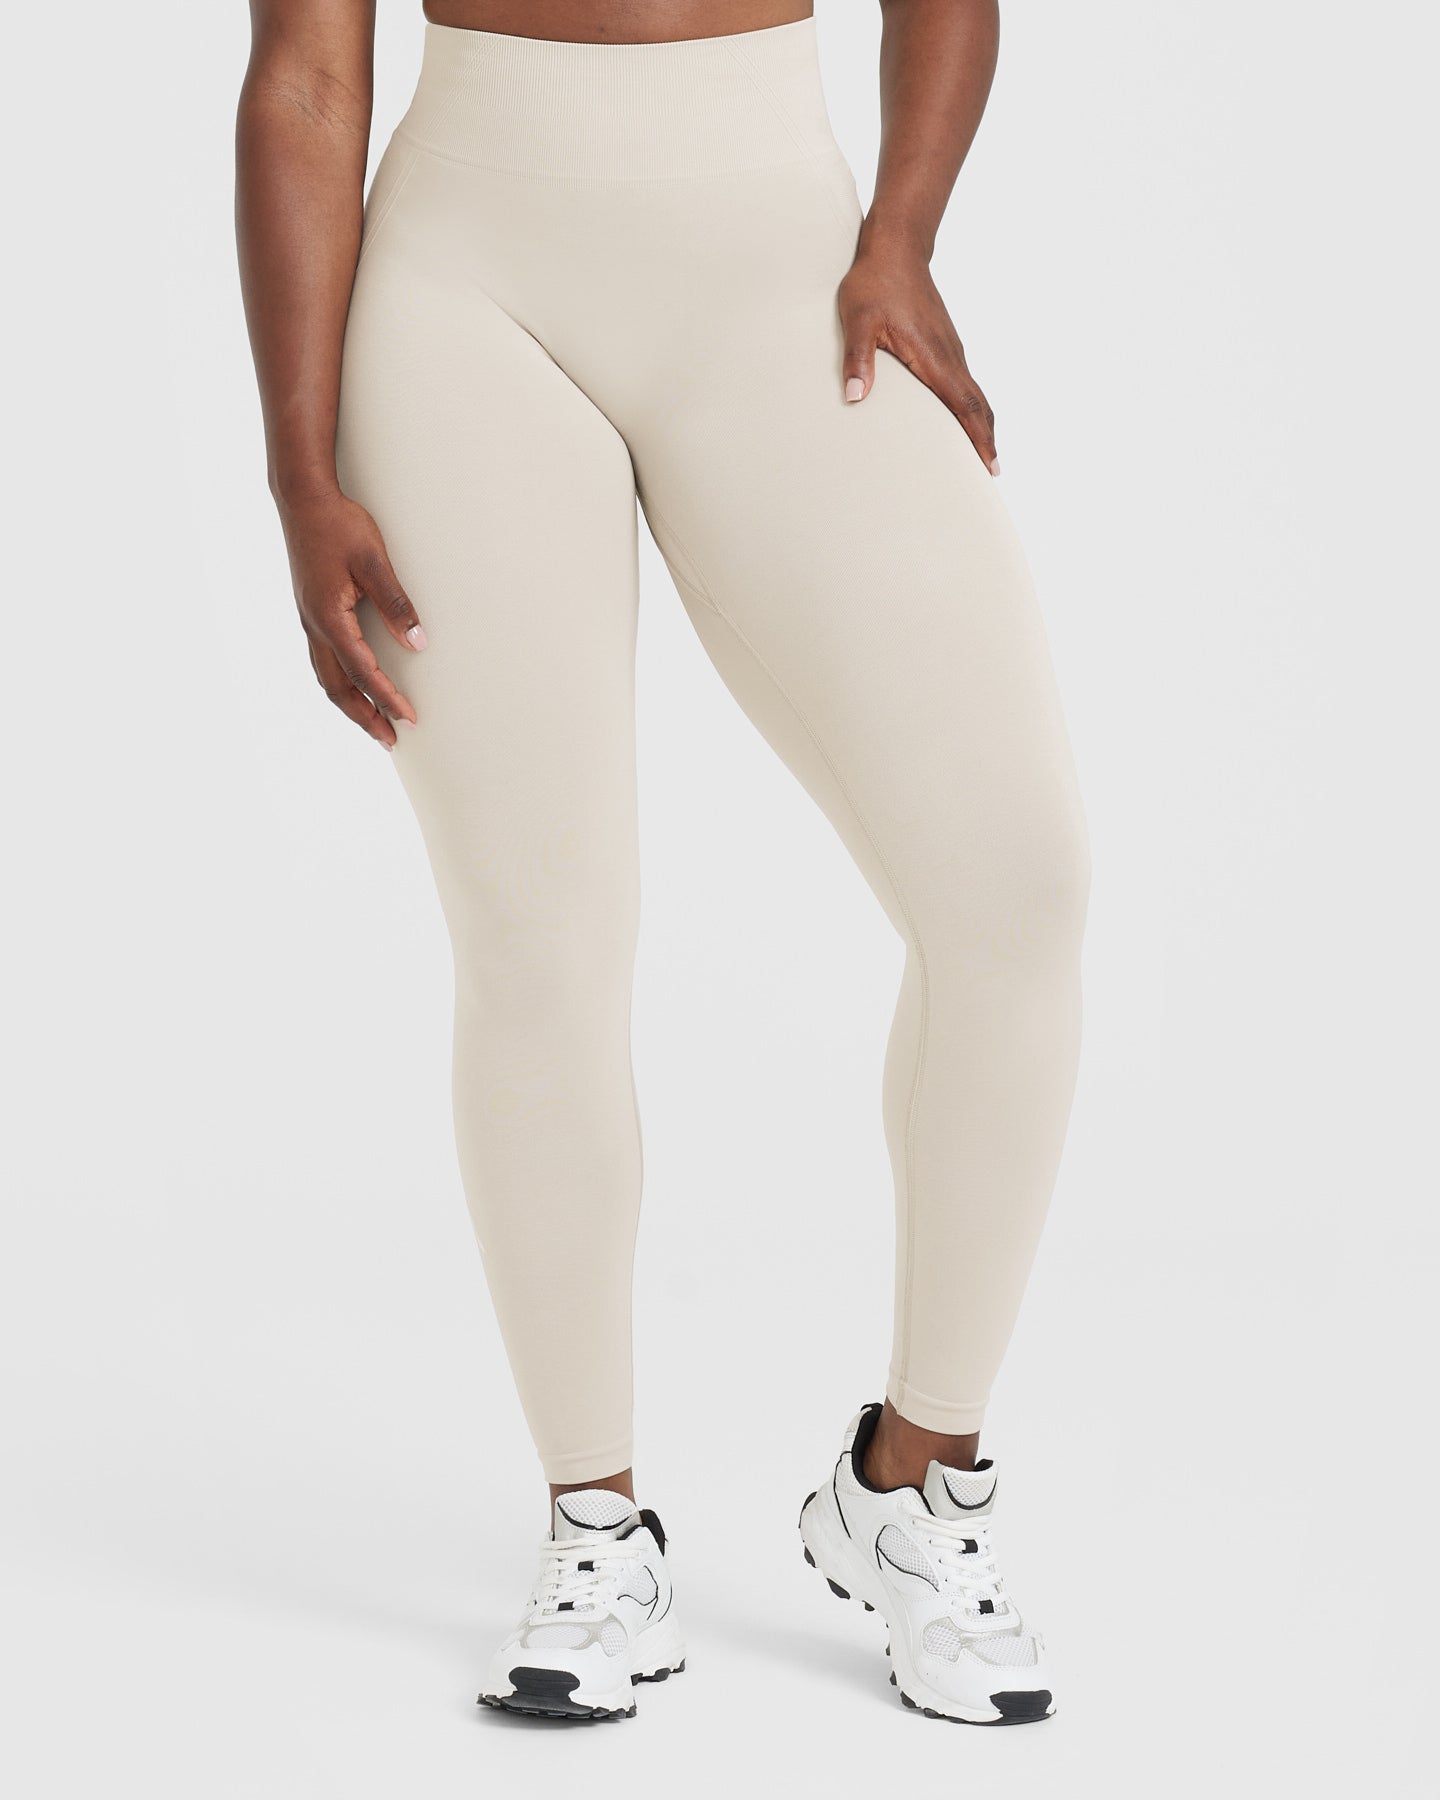 Oner Active - Effortless Seamless in 2023  Seamless leggings, Pants for  women, Light denim